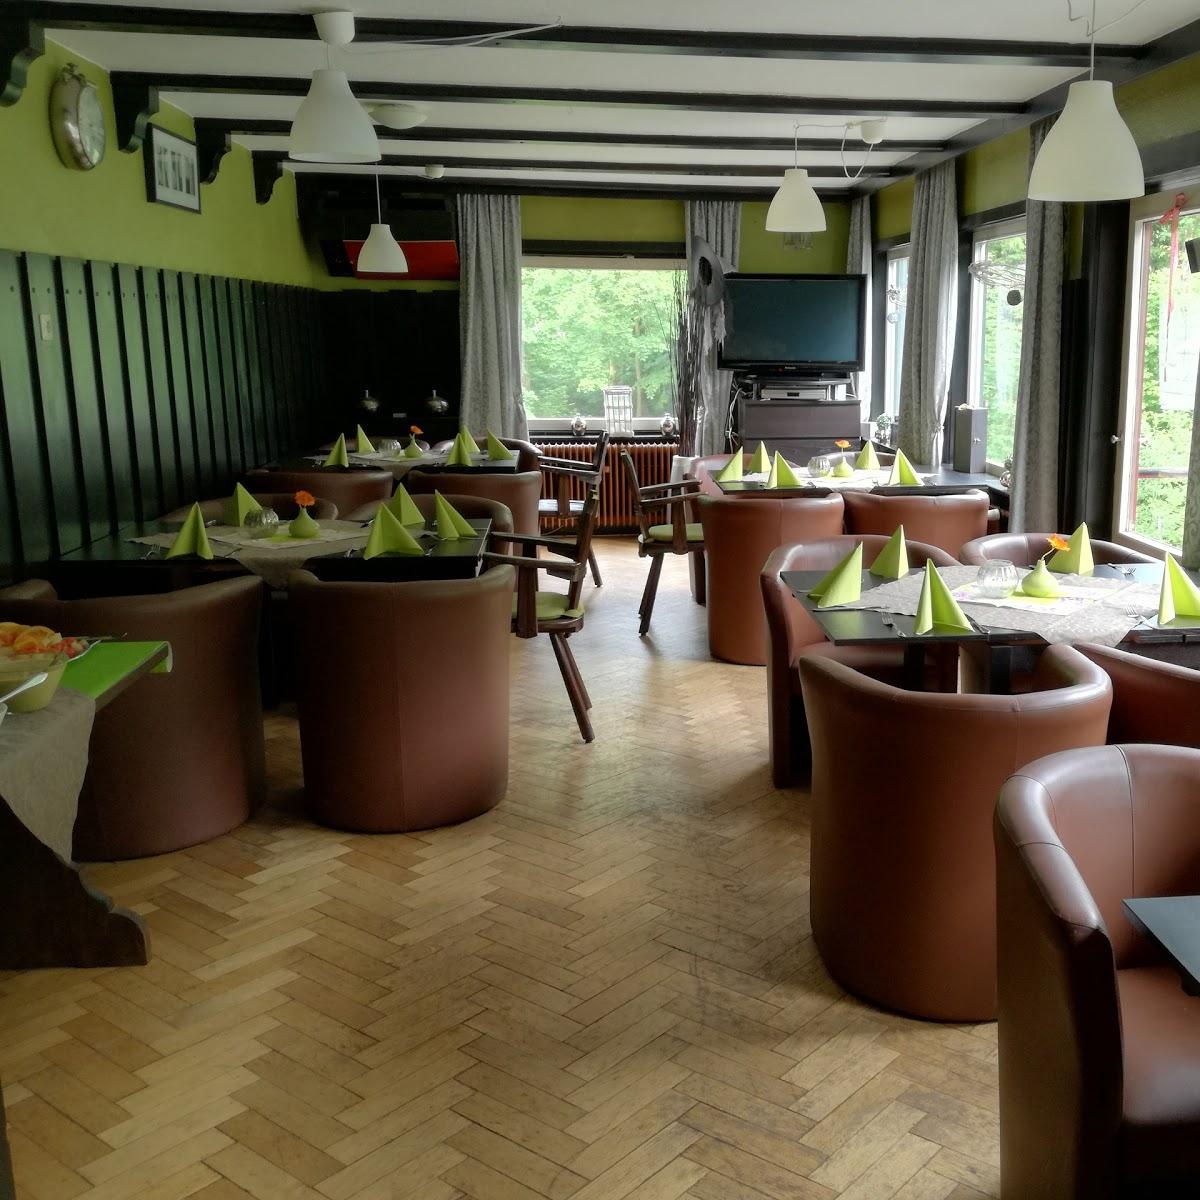 Restaurant "Hotel-Restaurant Spiegeltaler Eck" in Wildemann